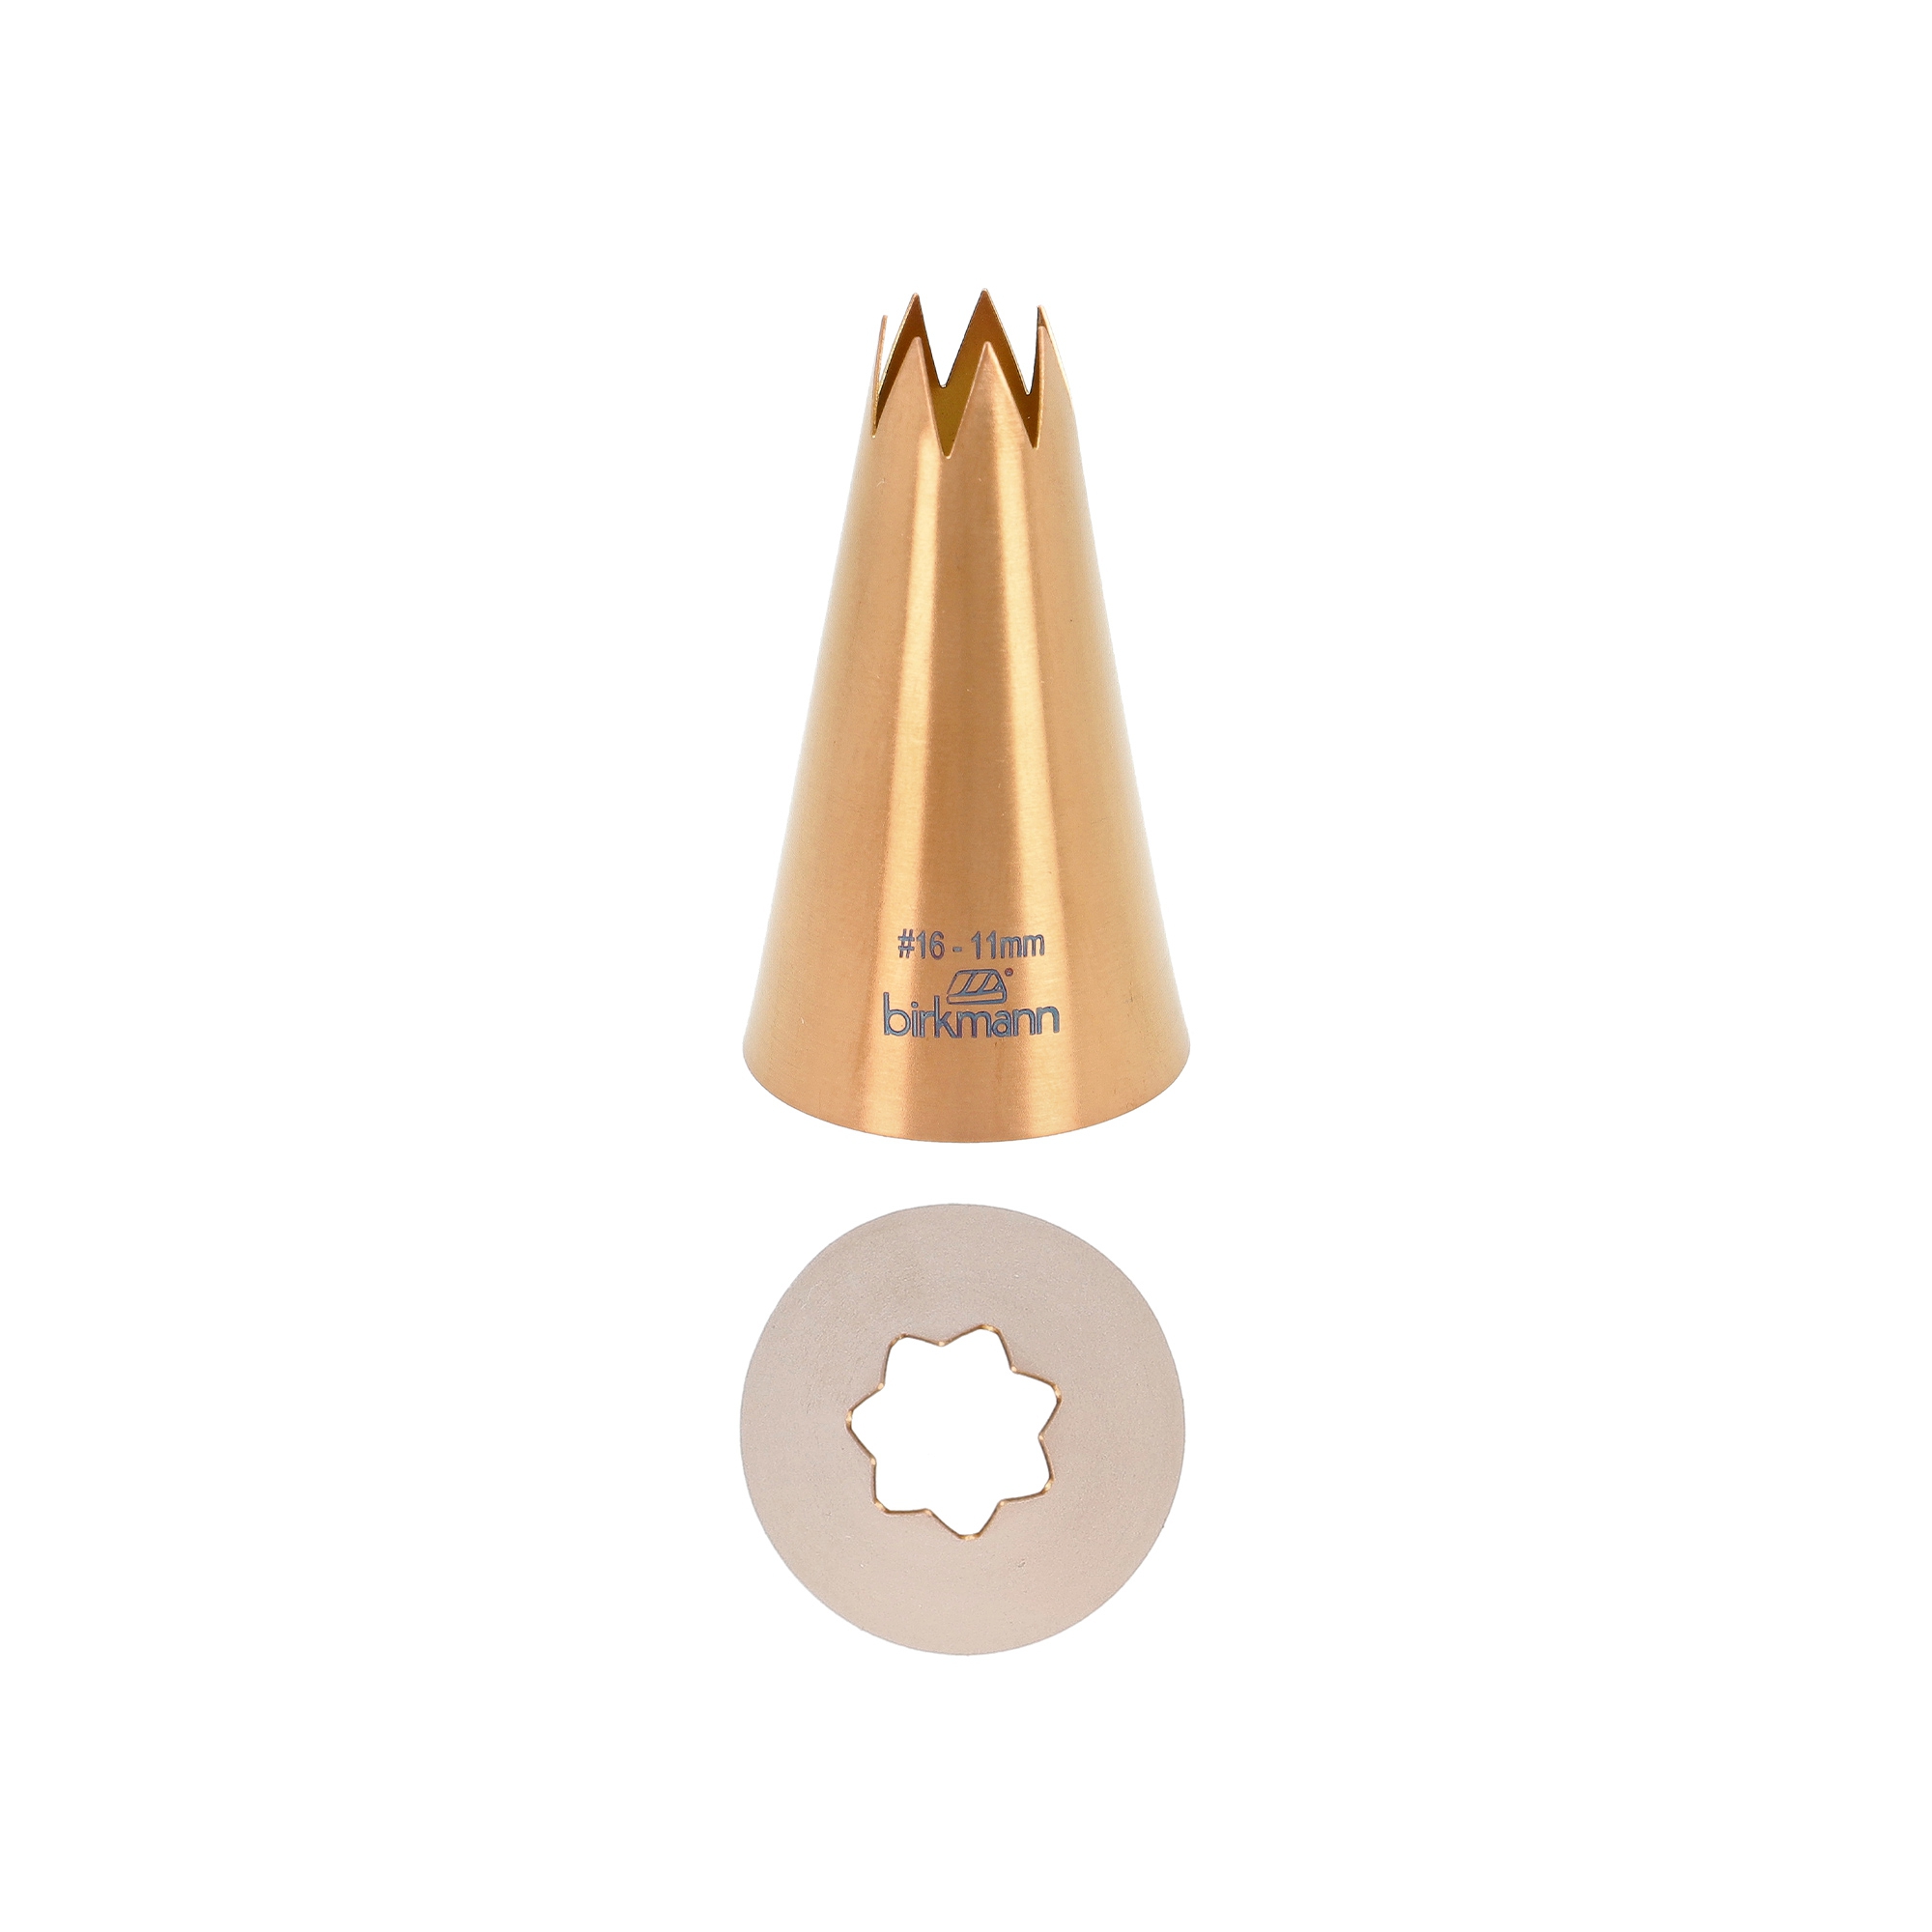 Birkmann - Star nozzle copper colored #16 - 11mm